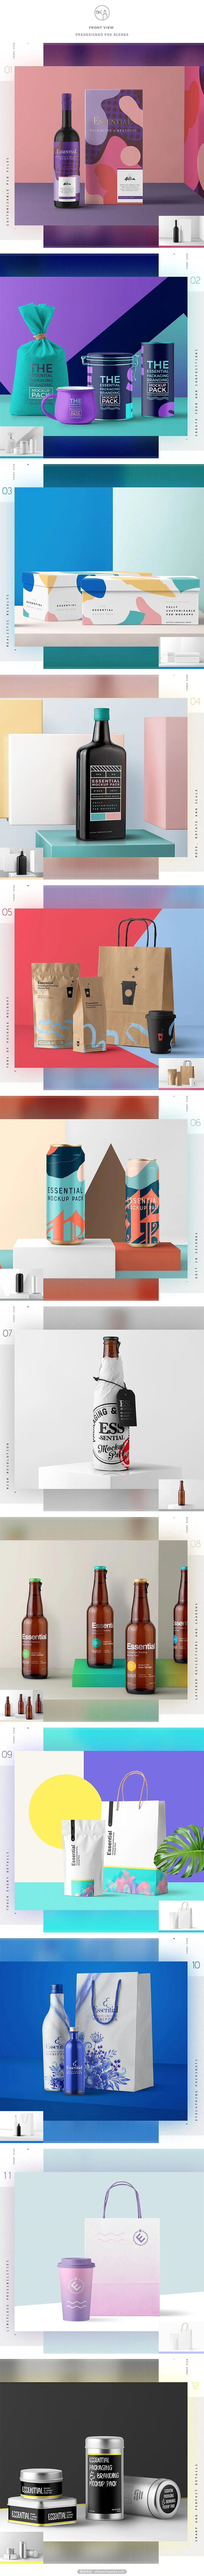 Essential Packaging & Branding Mockup-1.jpg